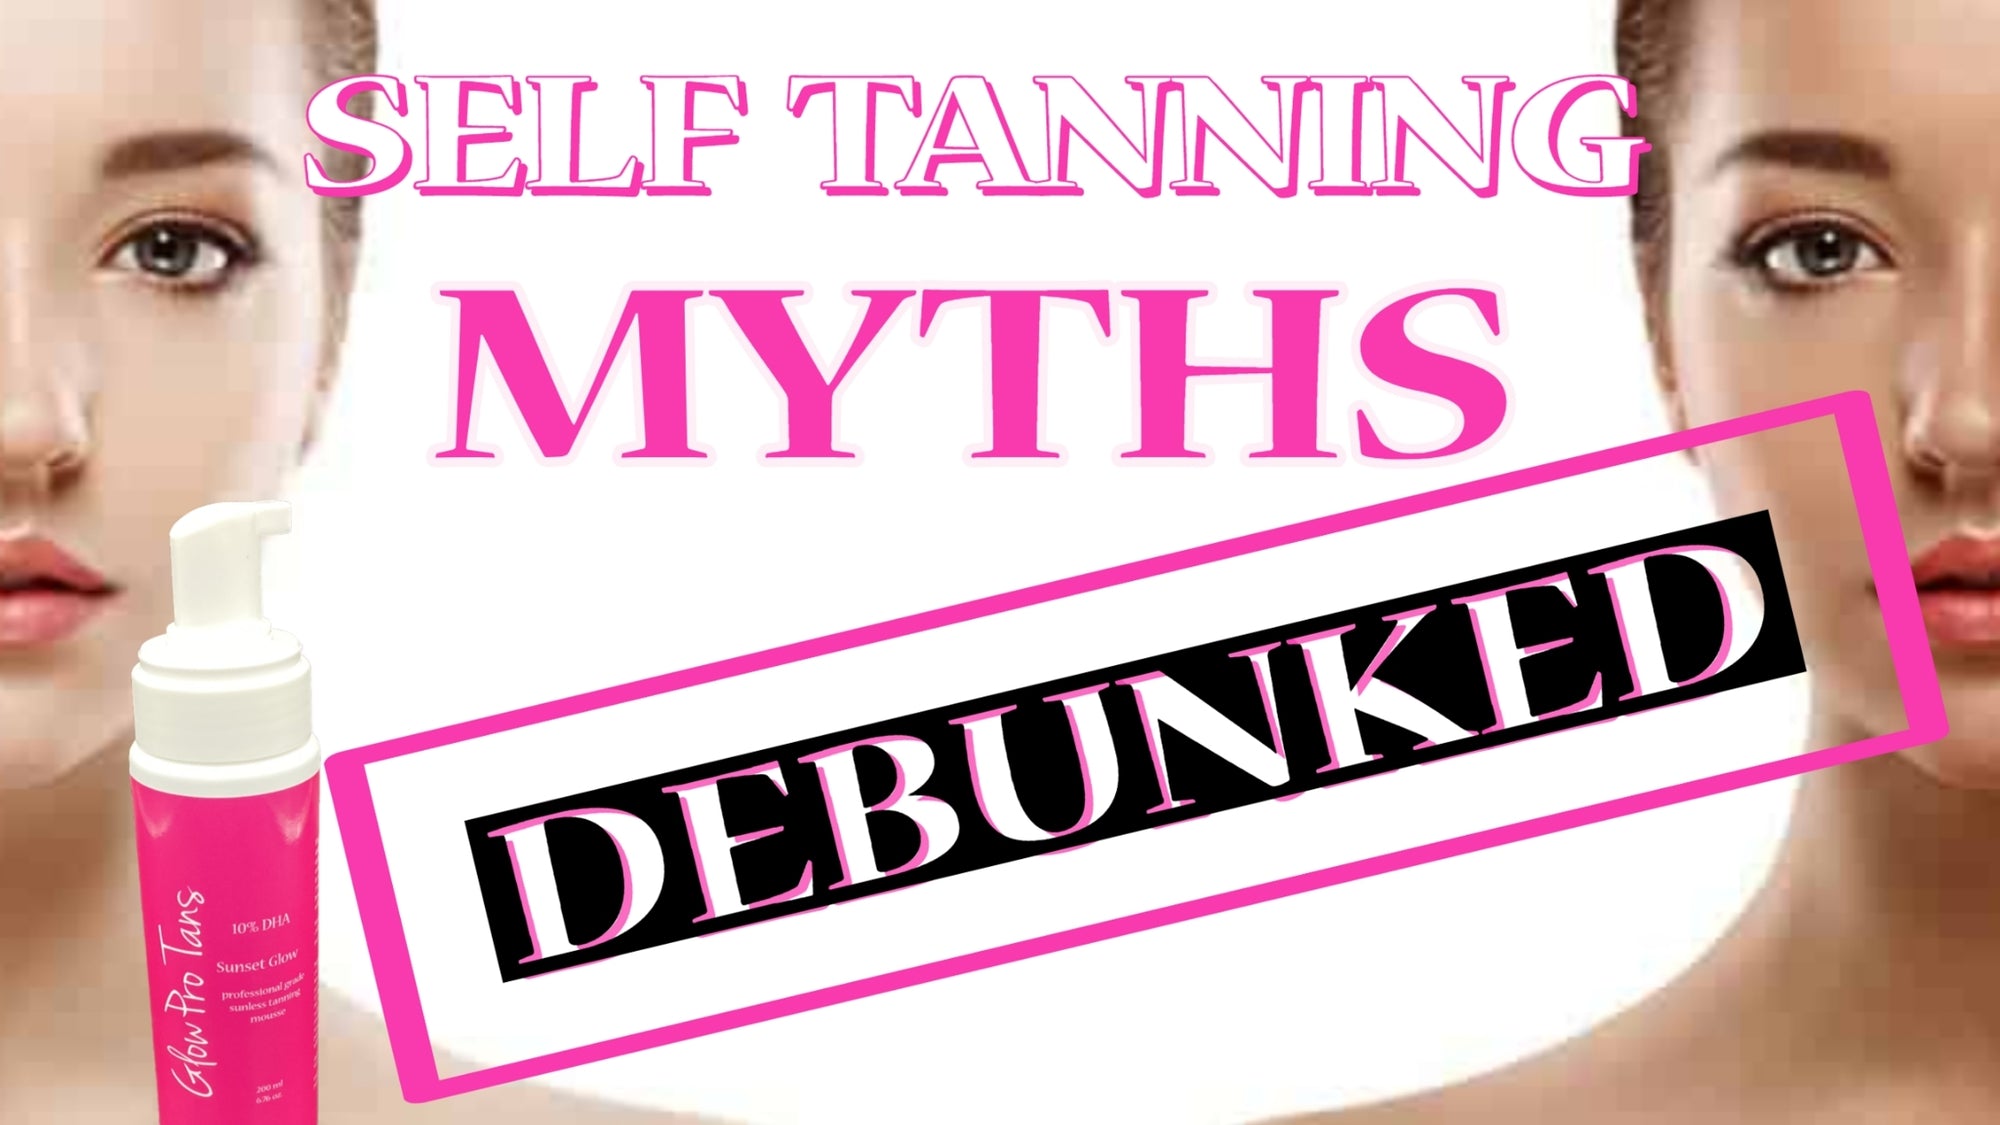 Tanning Myths Debunked